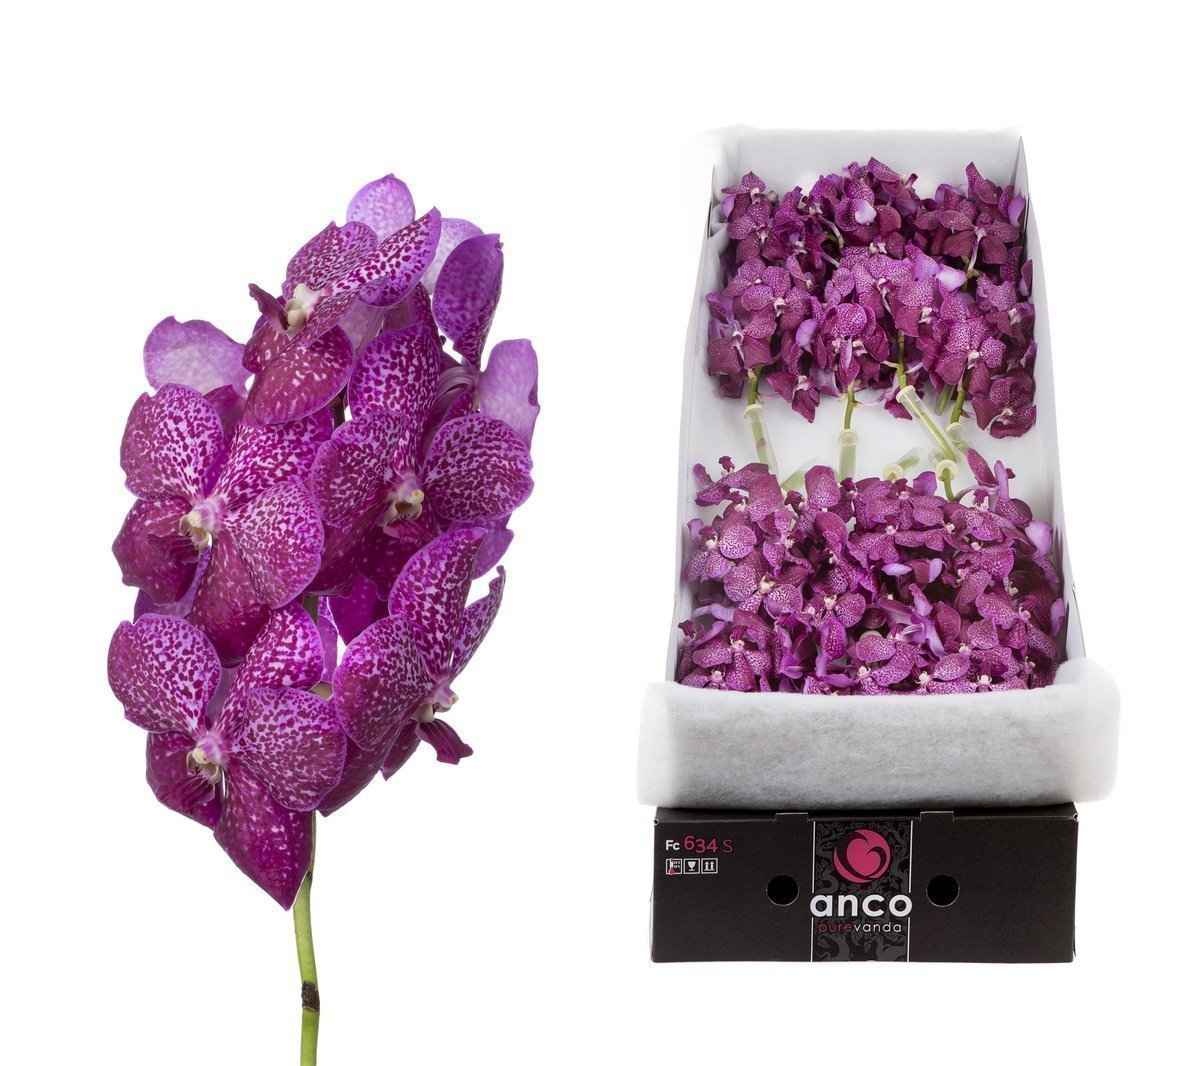 Срезанные цветы оптом Vanda sunanda magenta glitter per stem от 8шт. из Голландии с доставкой по России